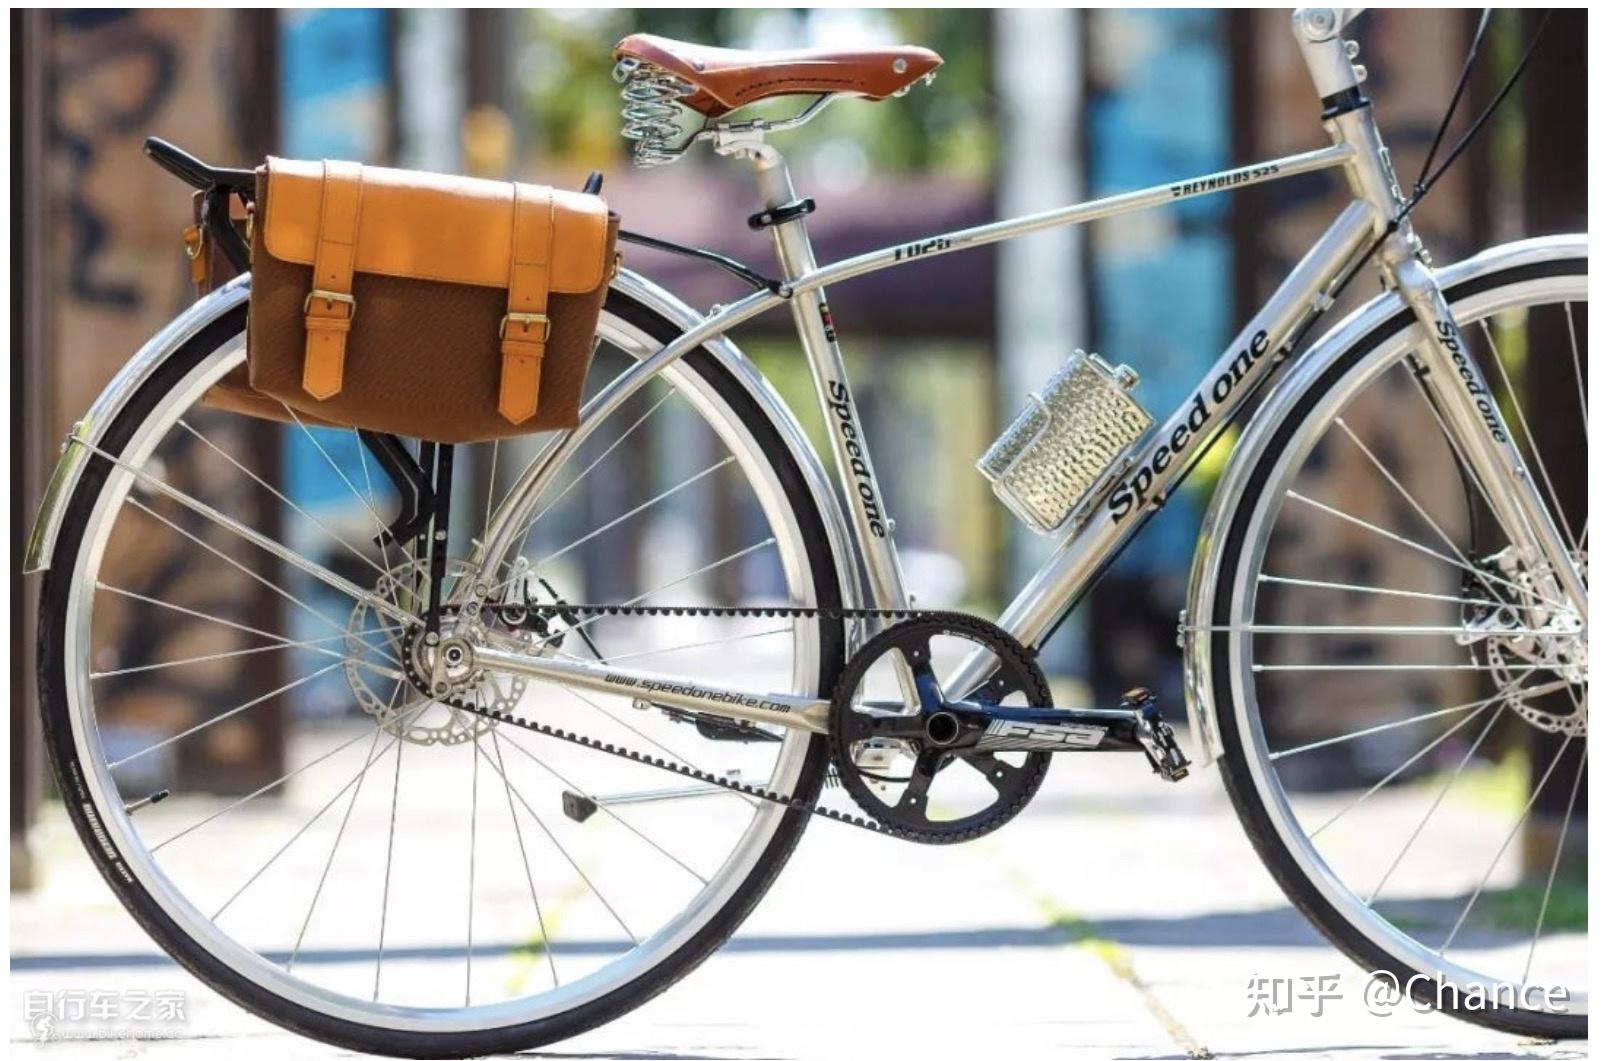 为什么中国学生都喜欢骑山地车不愿骑如图的老式自行车